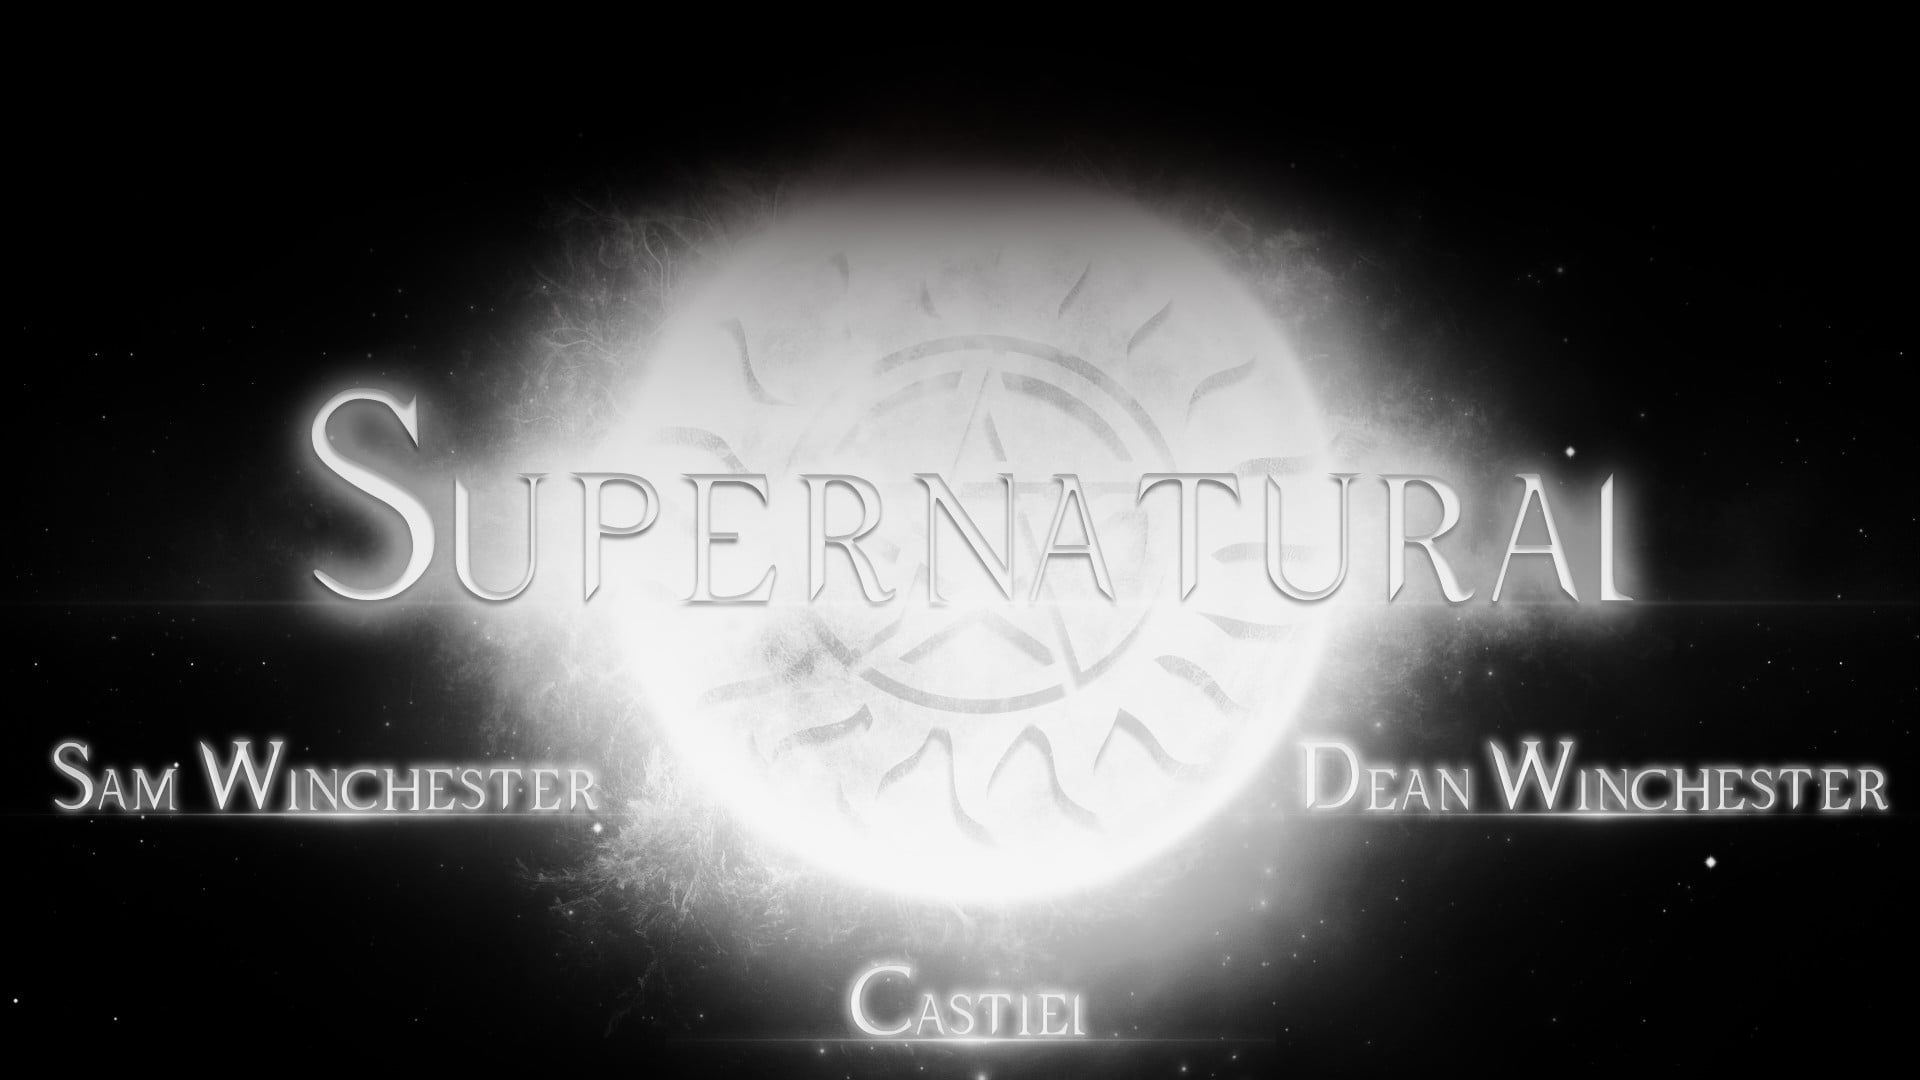 Supernatural, fan art, Sam Winchester, Dean Winchester, Castiel